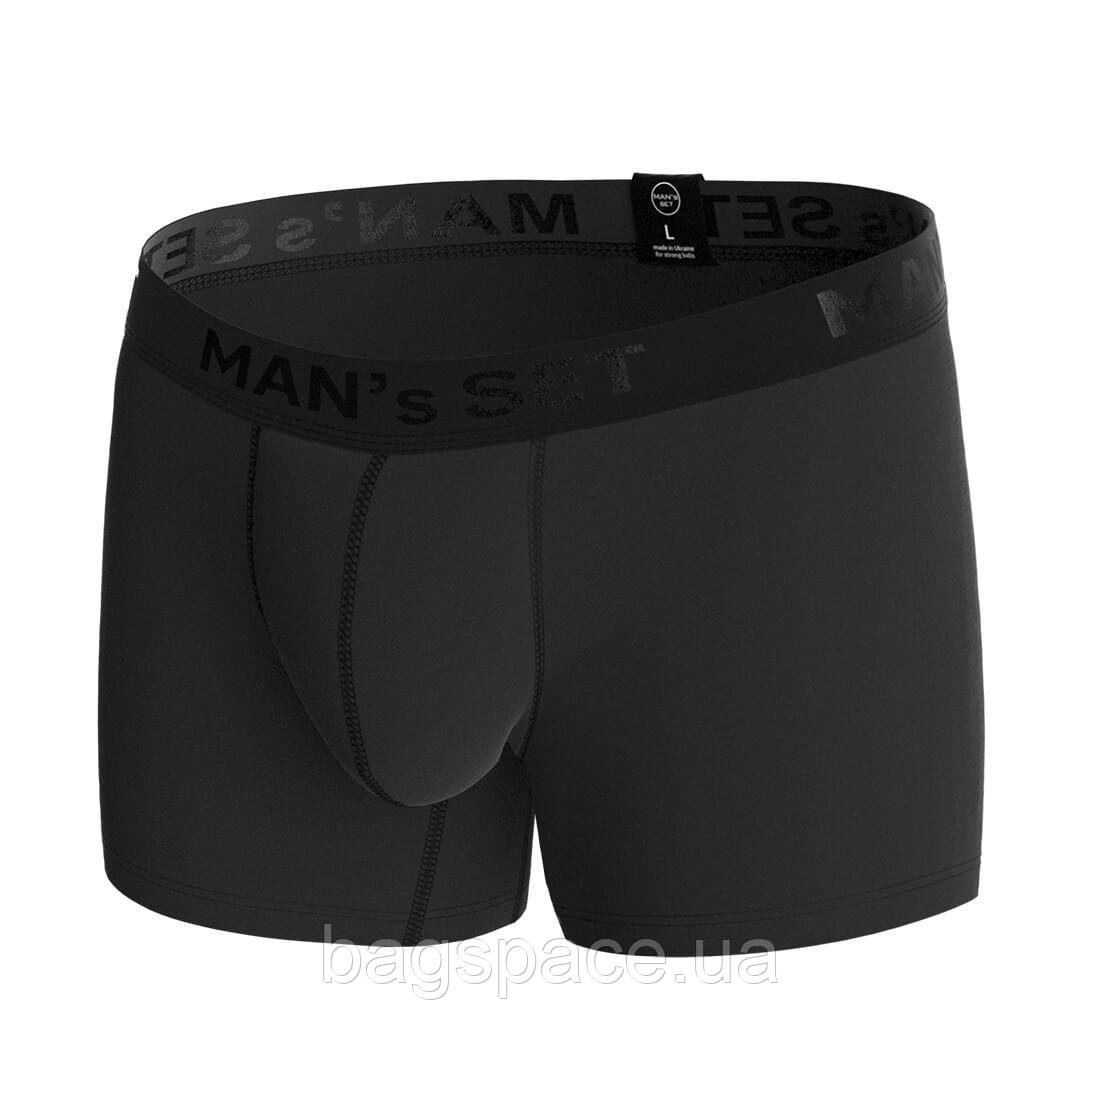 Чоловічі анатомічні боксери Intimate Black Series чорний MAN's SET XL BS, код: 7588950